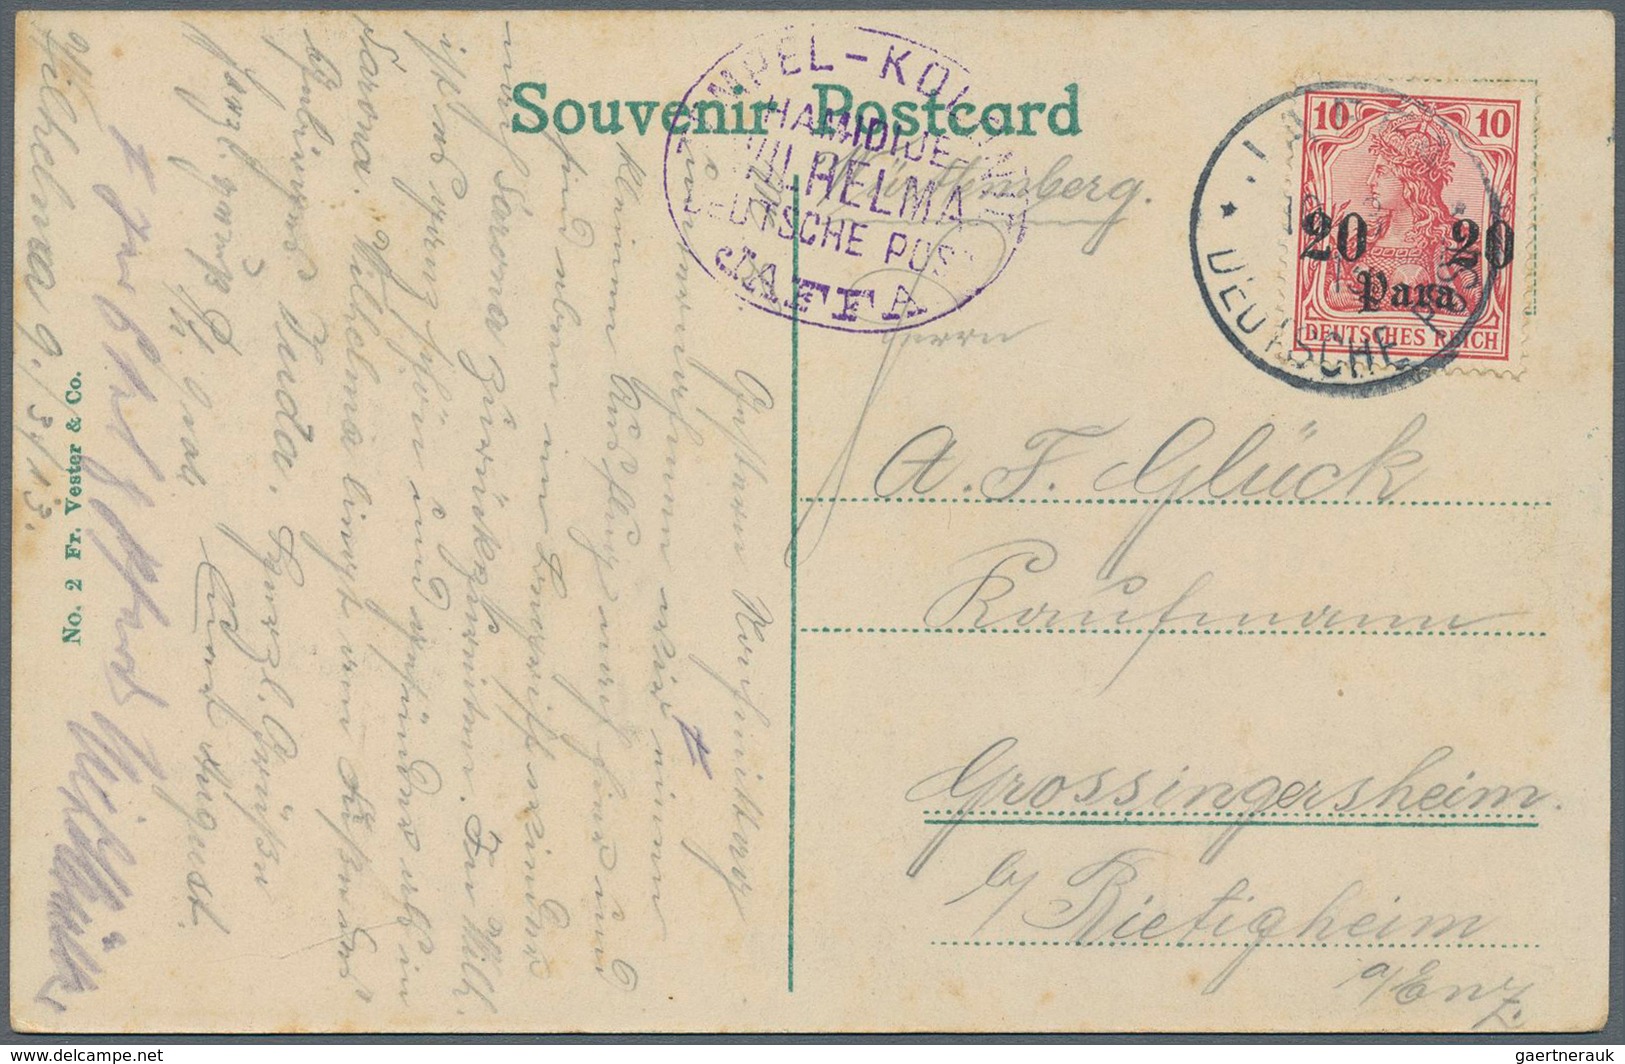 22664 Holyland: 1902/1913, schöne Dokumentation von 32 Belegen einer Korrespondenz aus den deutschen Siedl